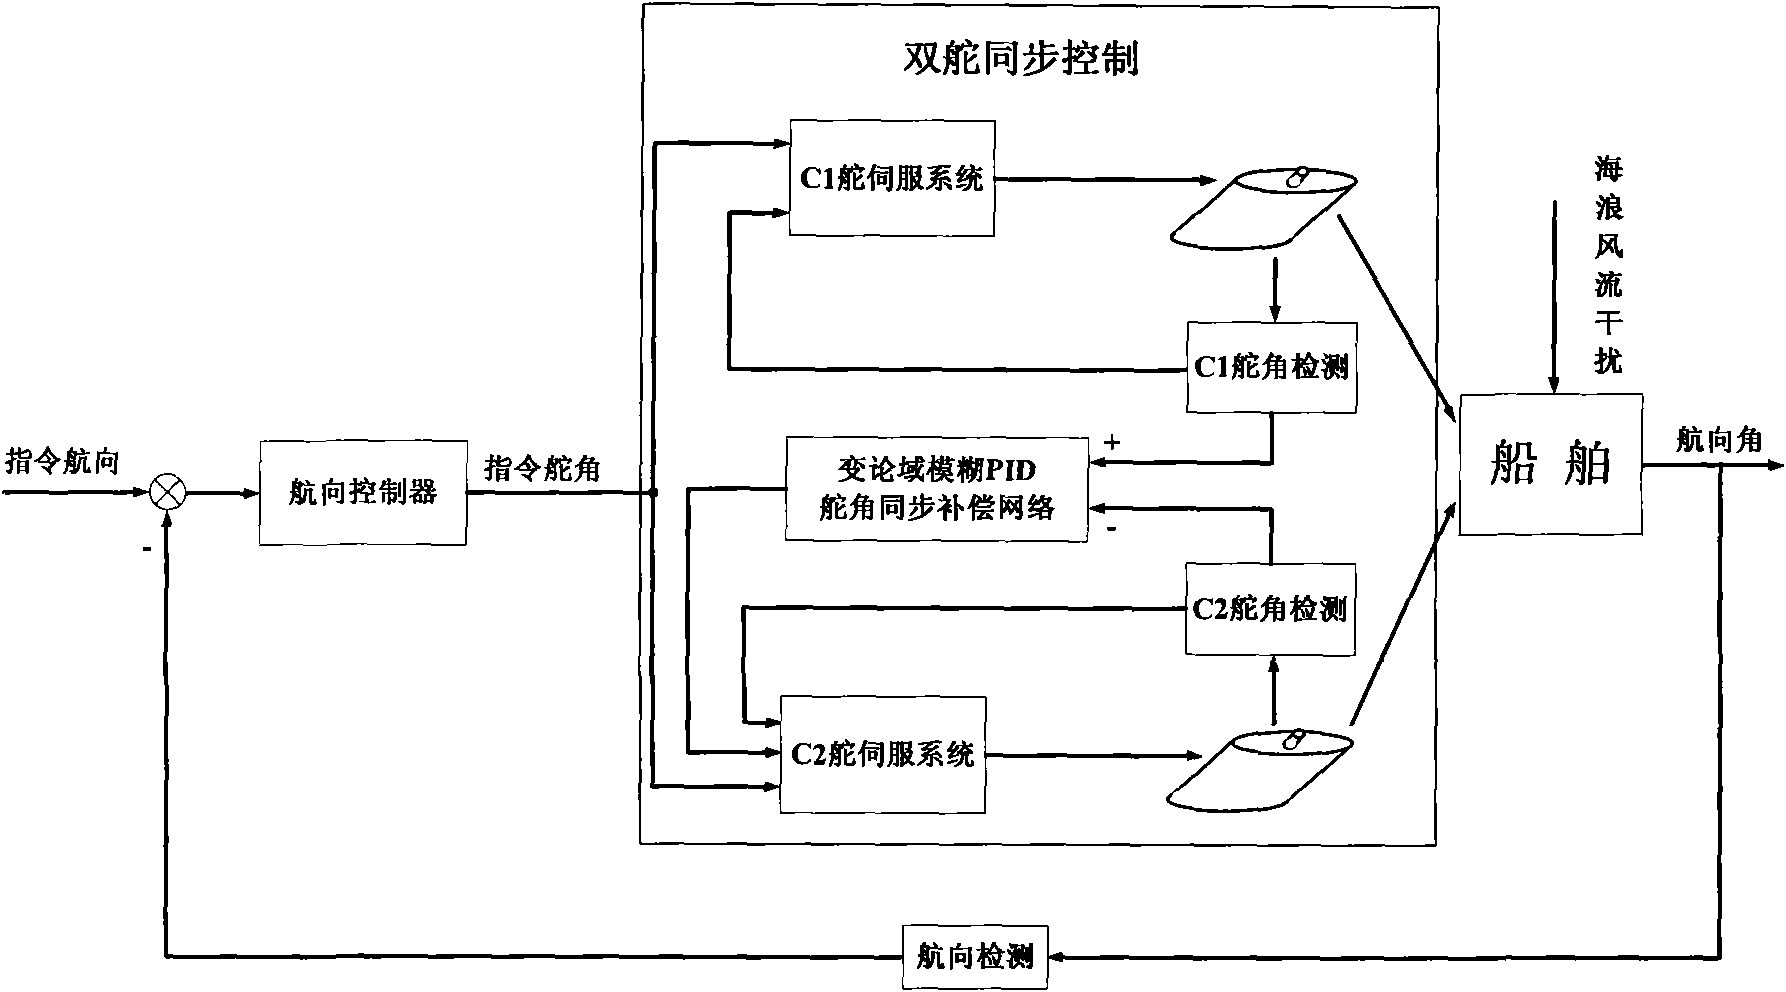 Twin-rudder synchronization control method of ship